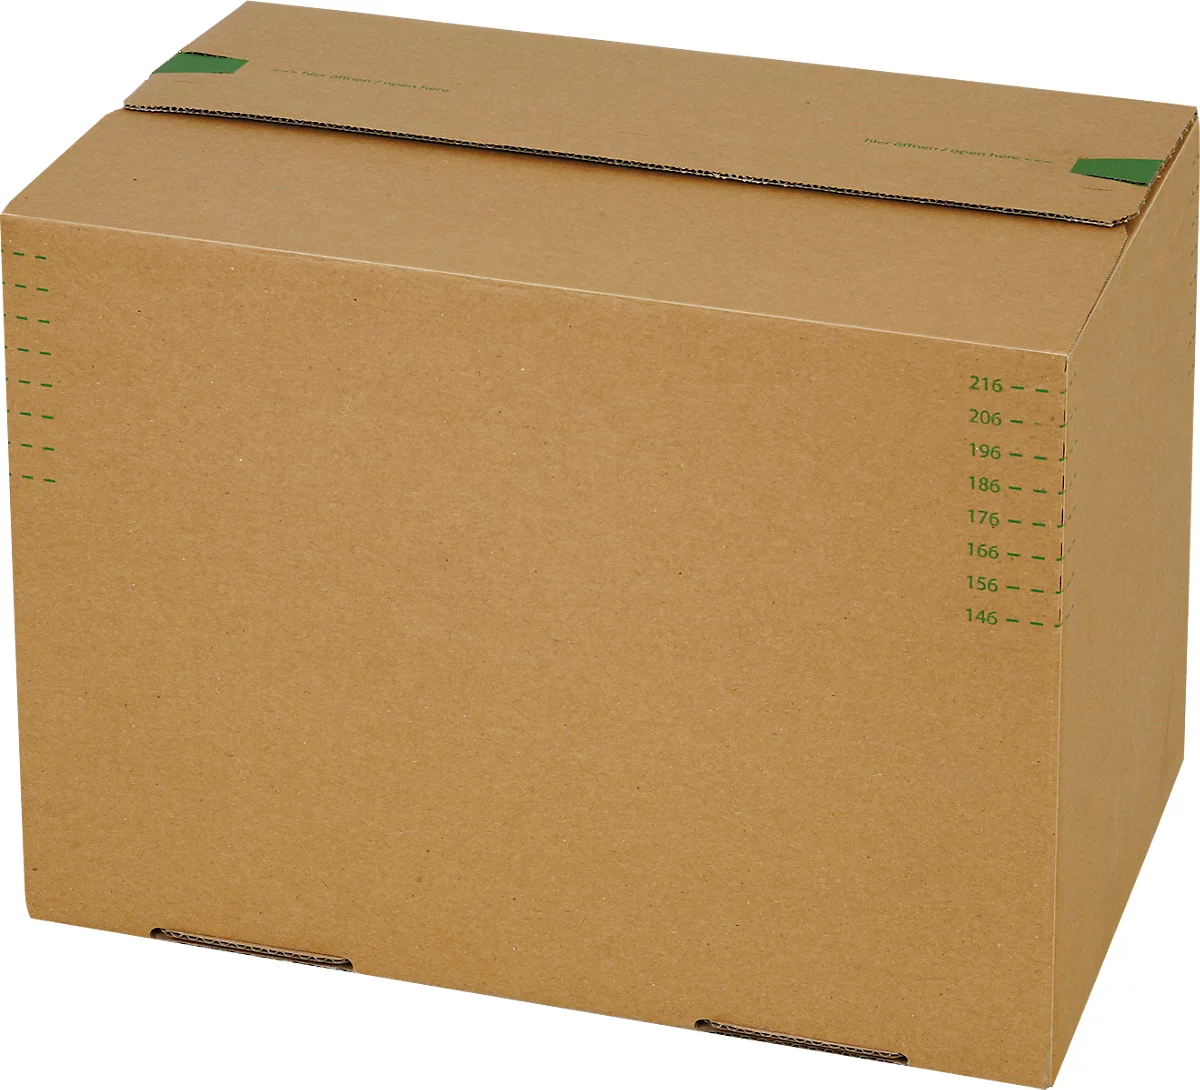 Cajas de envío Grünmarie®, 309 x 221 x 140-230 mm, formato A4/altura variable, fondo automático, hasta 20 kg, 100 % reciclable, cartón ondulado FSC®, marrón, 10 unidades.